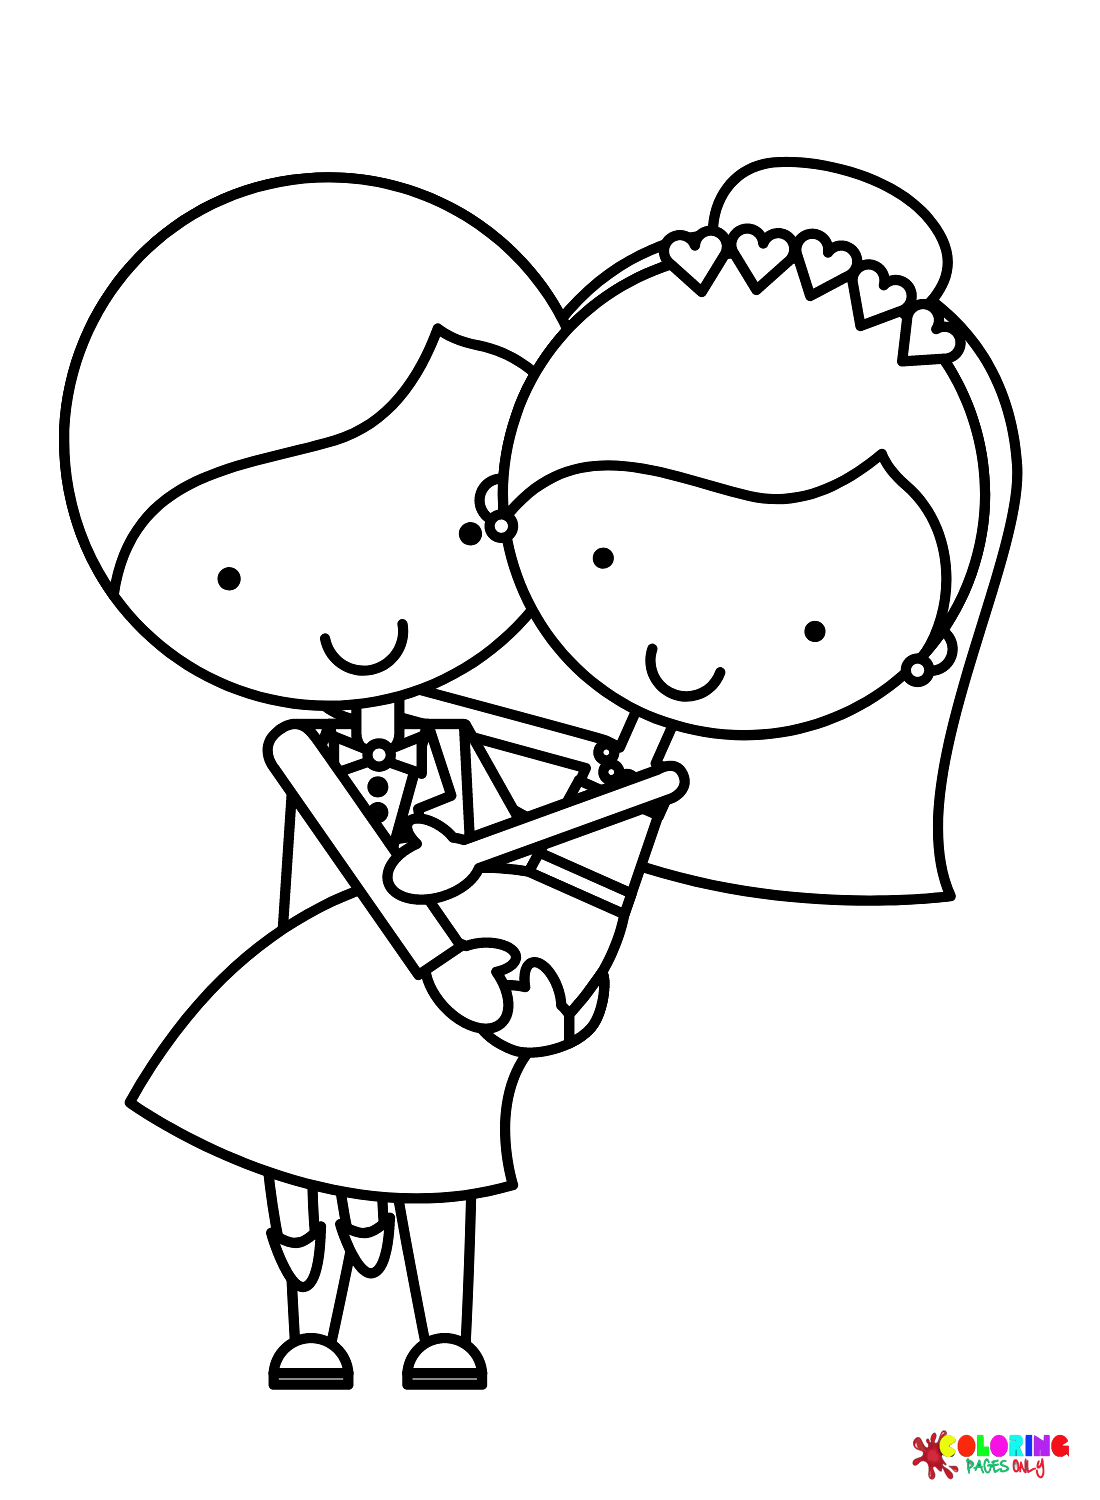 Милая невеста и жених из мультфильма «Жених и невеста»